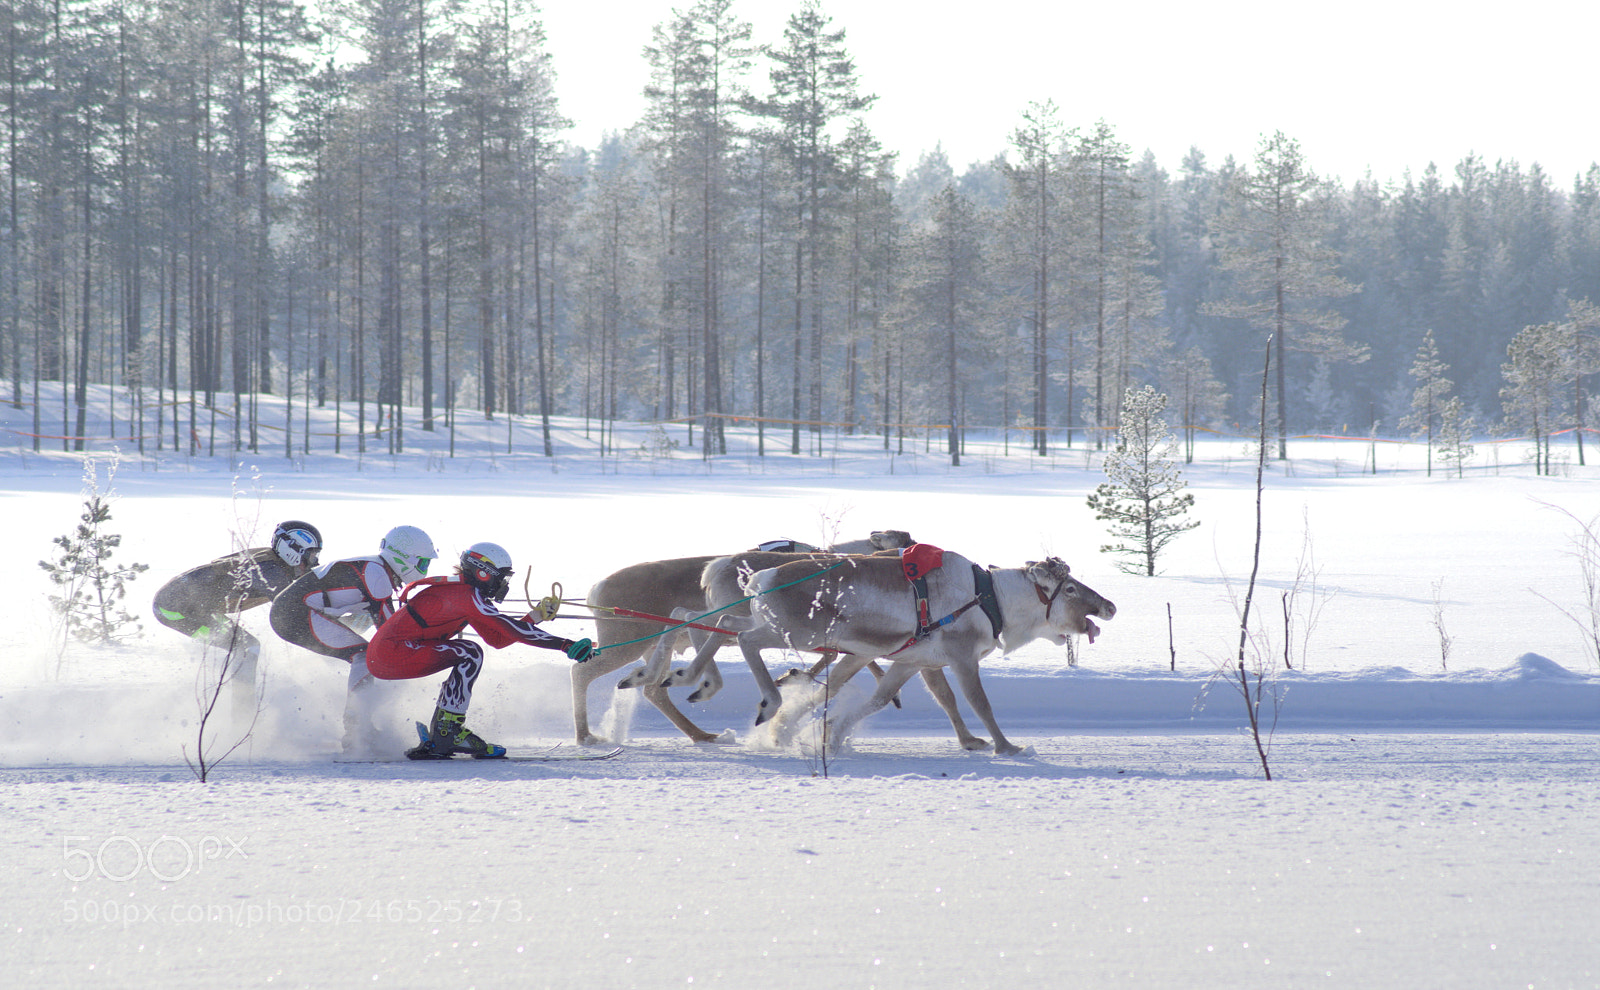 Pentax K-1 sample photo. Reindeer racing photography